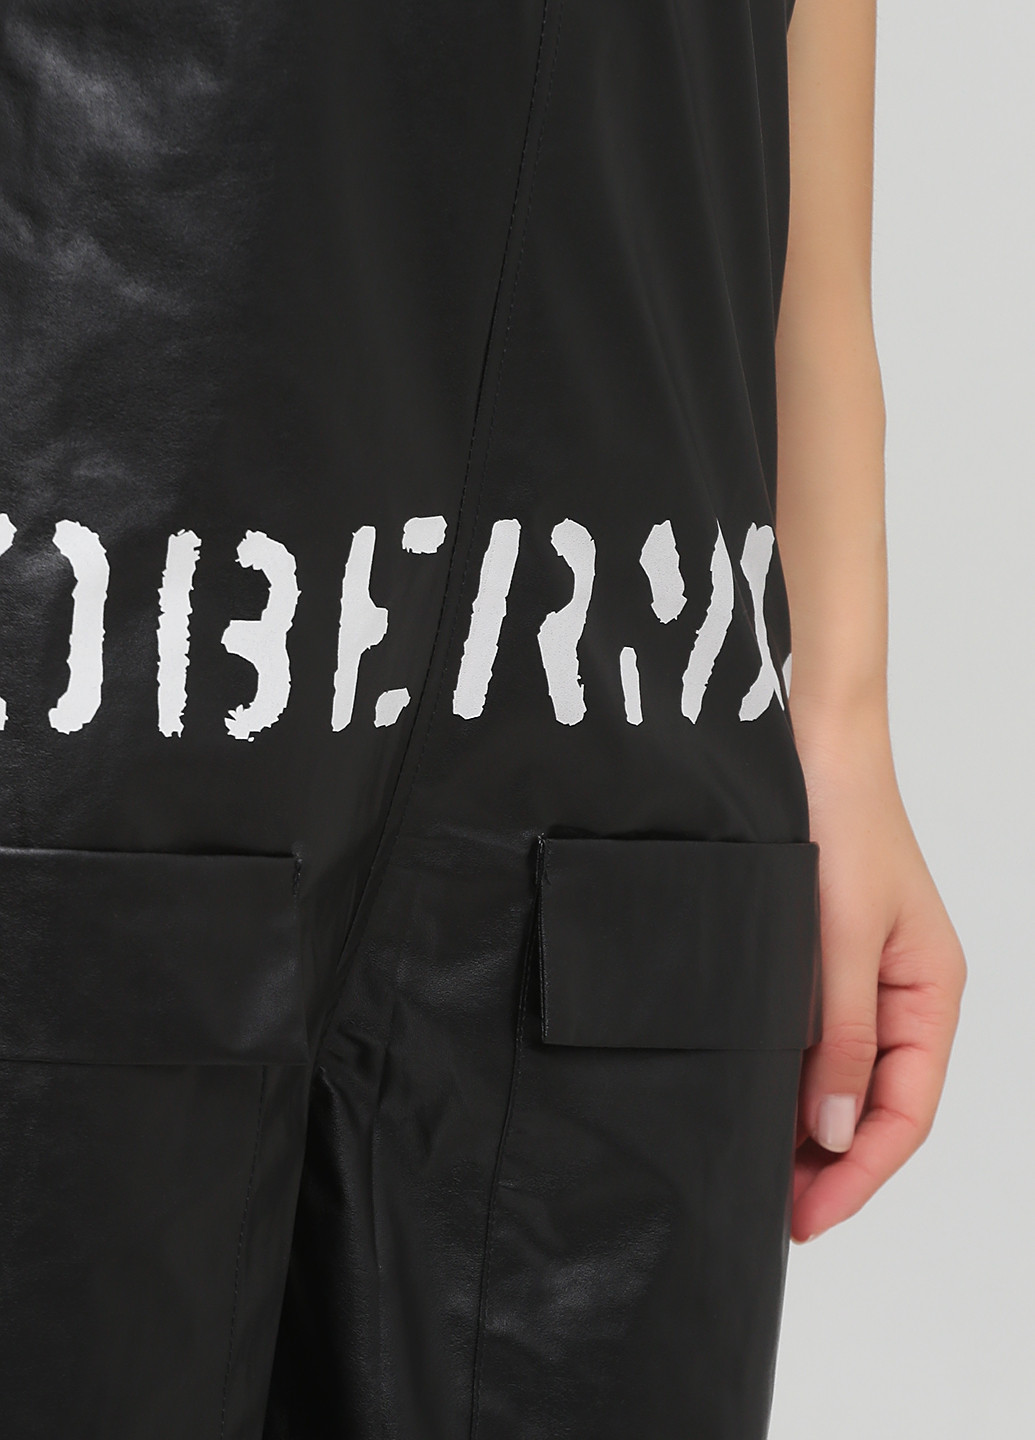 Комбинезон Arefeva комбинезон-брюки надпись чёрный кэжуал полиэстер, искусственная кожа